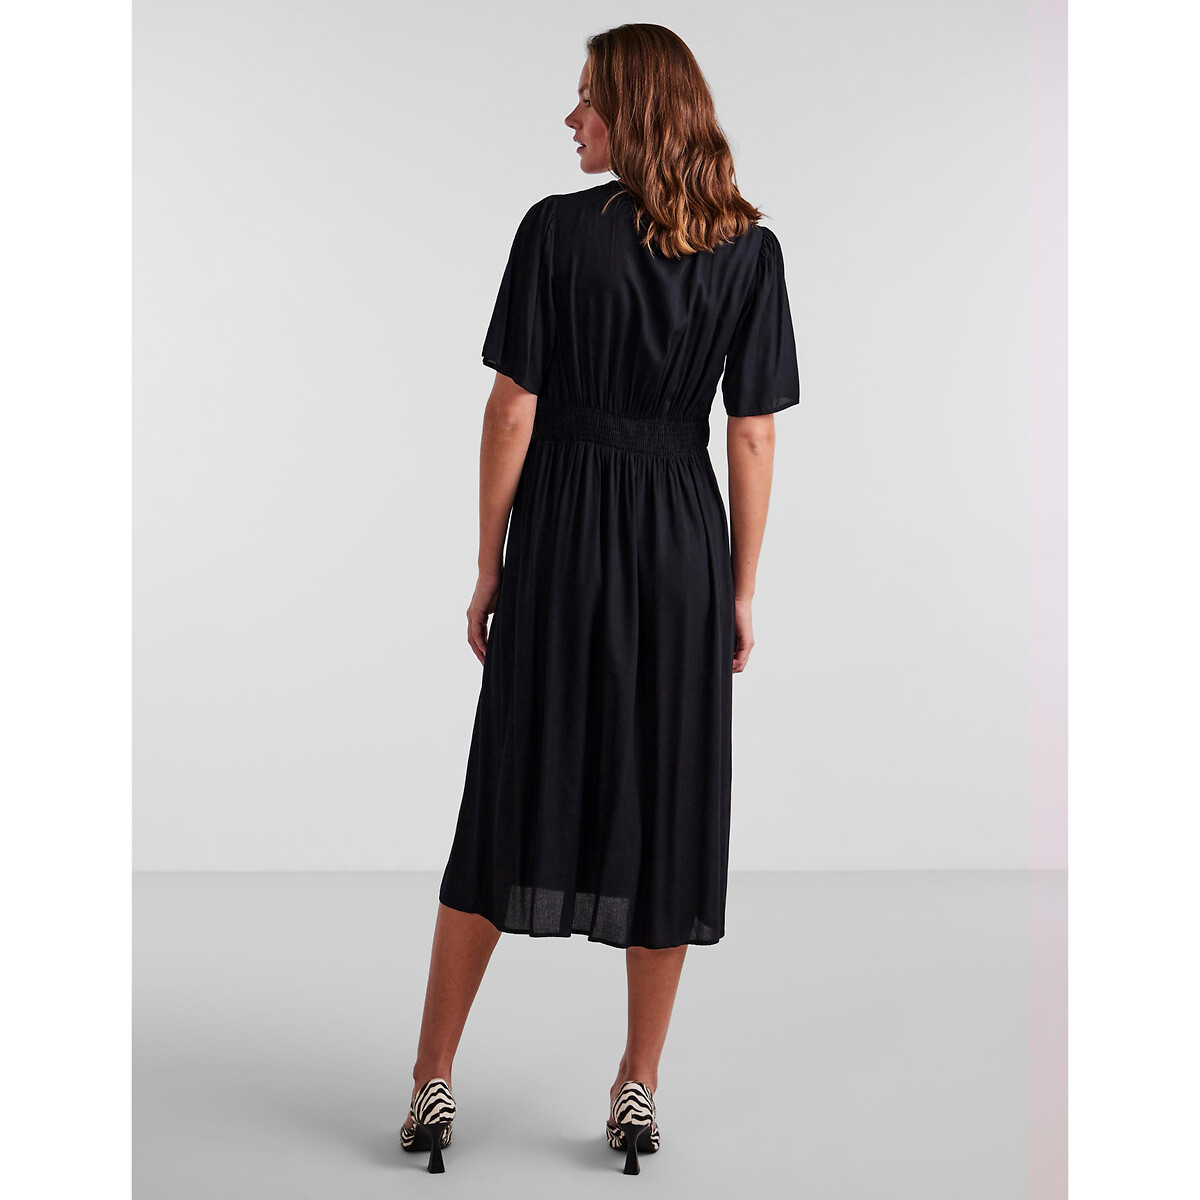 Платье Миди на пуговицах XL черный LaRedoute, размер XL - фото 4